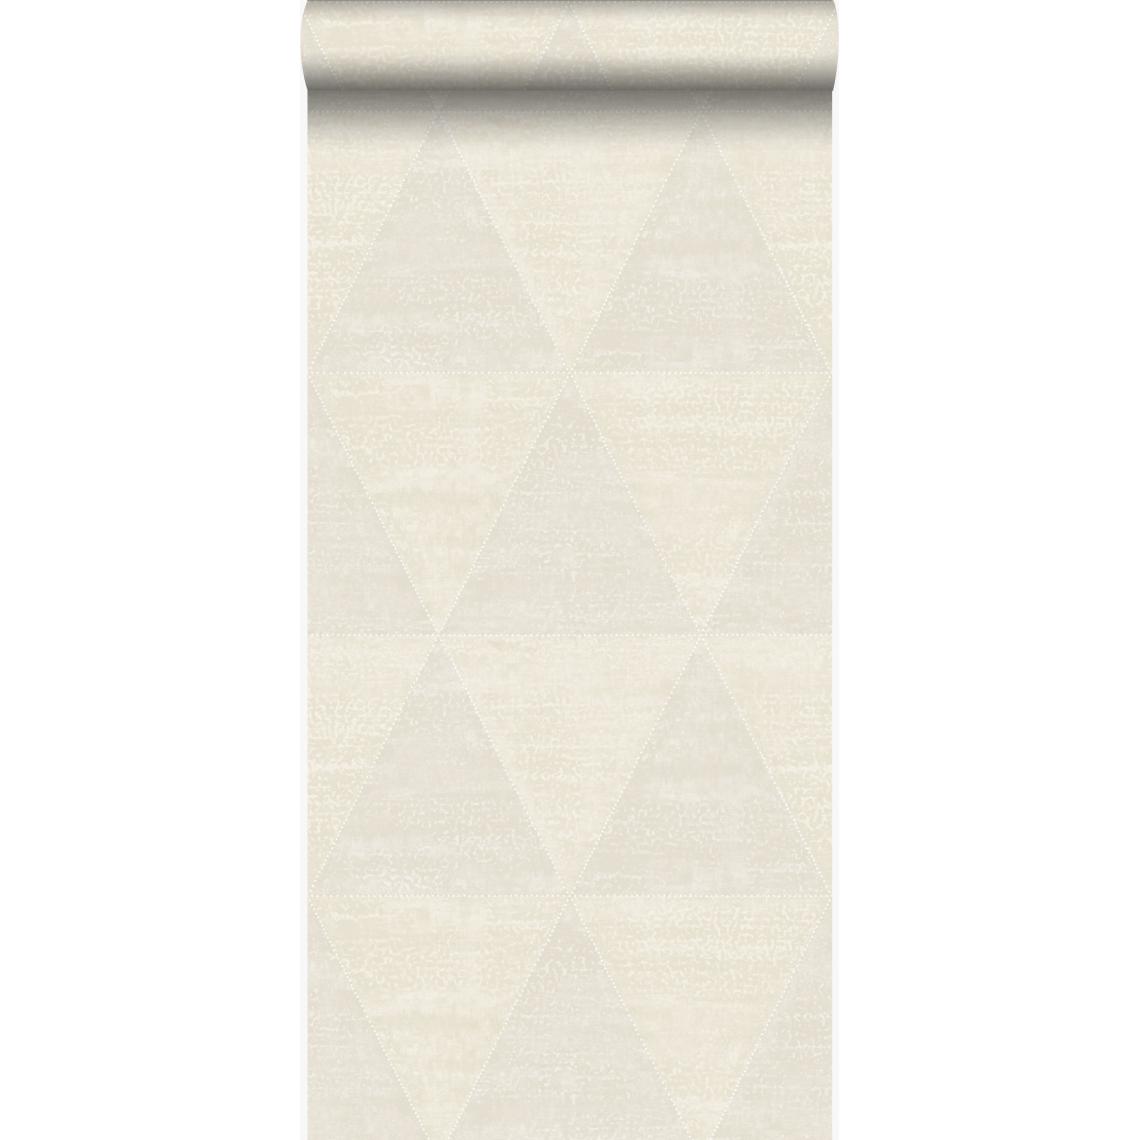 Origin - Origin papier peint triangles métalliques vieillis, altérés et touchés blanc d'ivoire - 337256 - 53 cm x 10.05 m - Papier peint